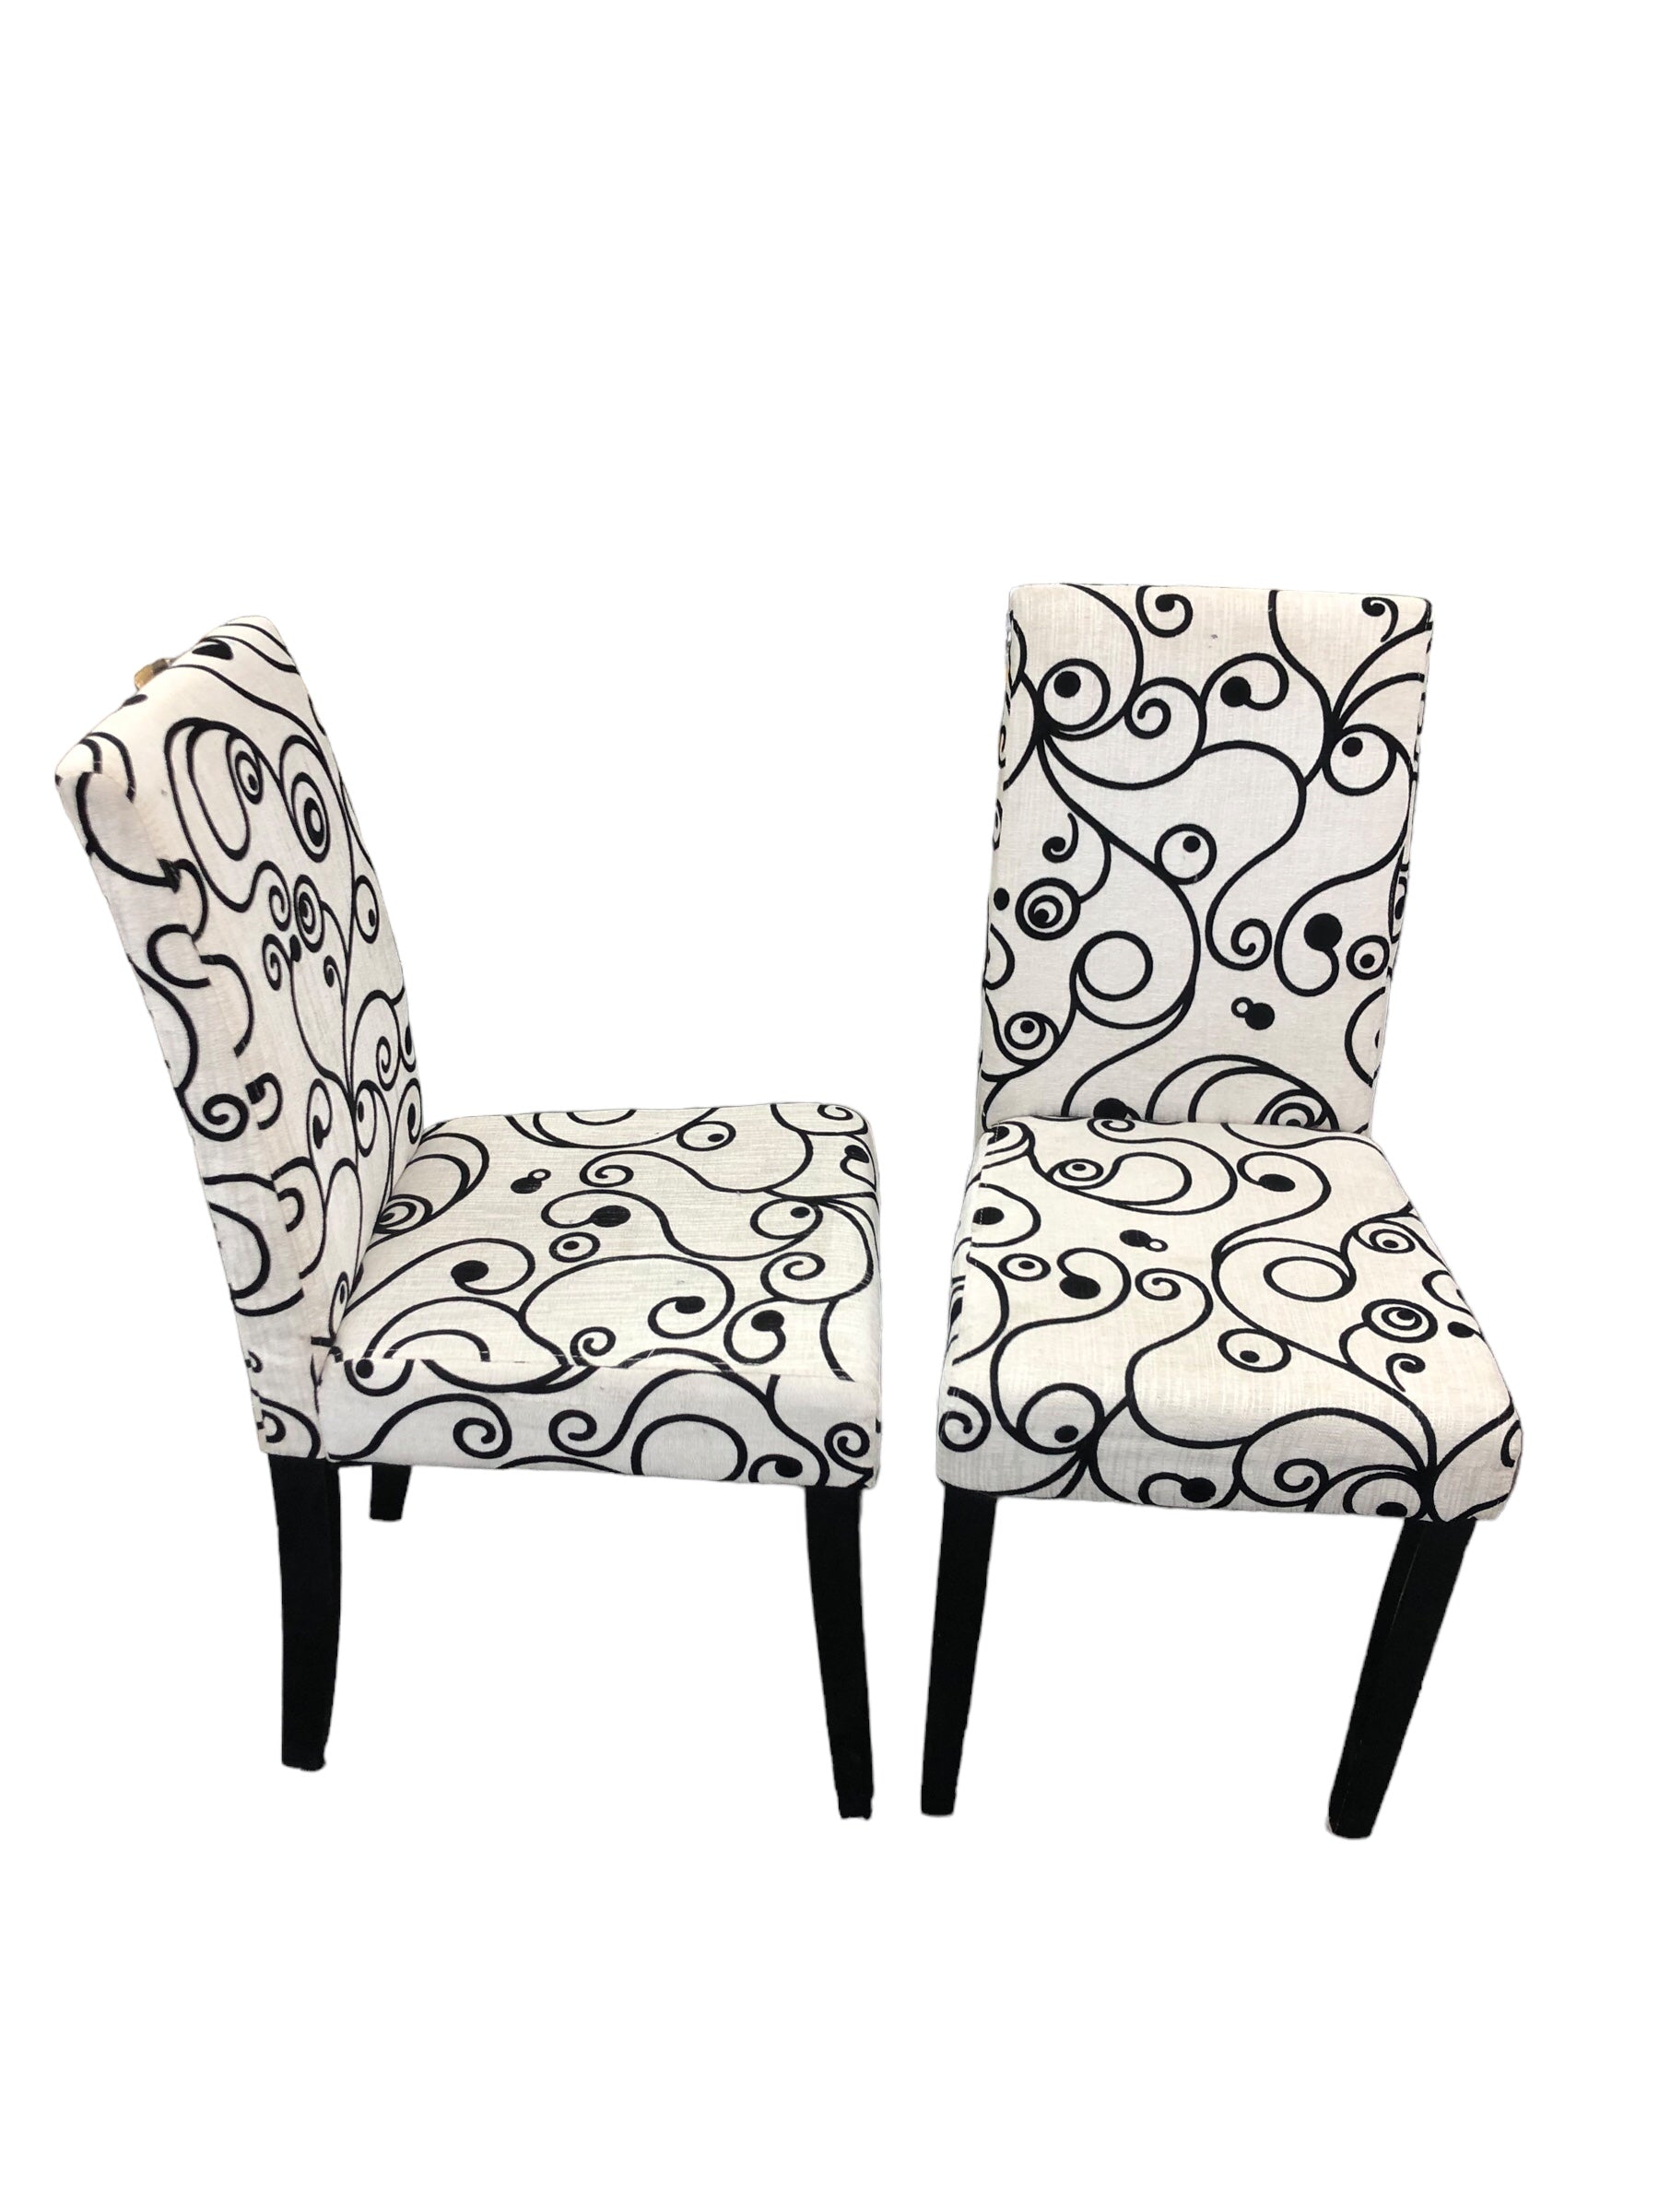 Chairs Off White/Blk Swirls (set)